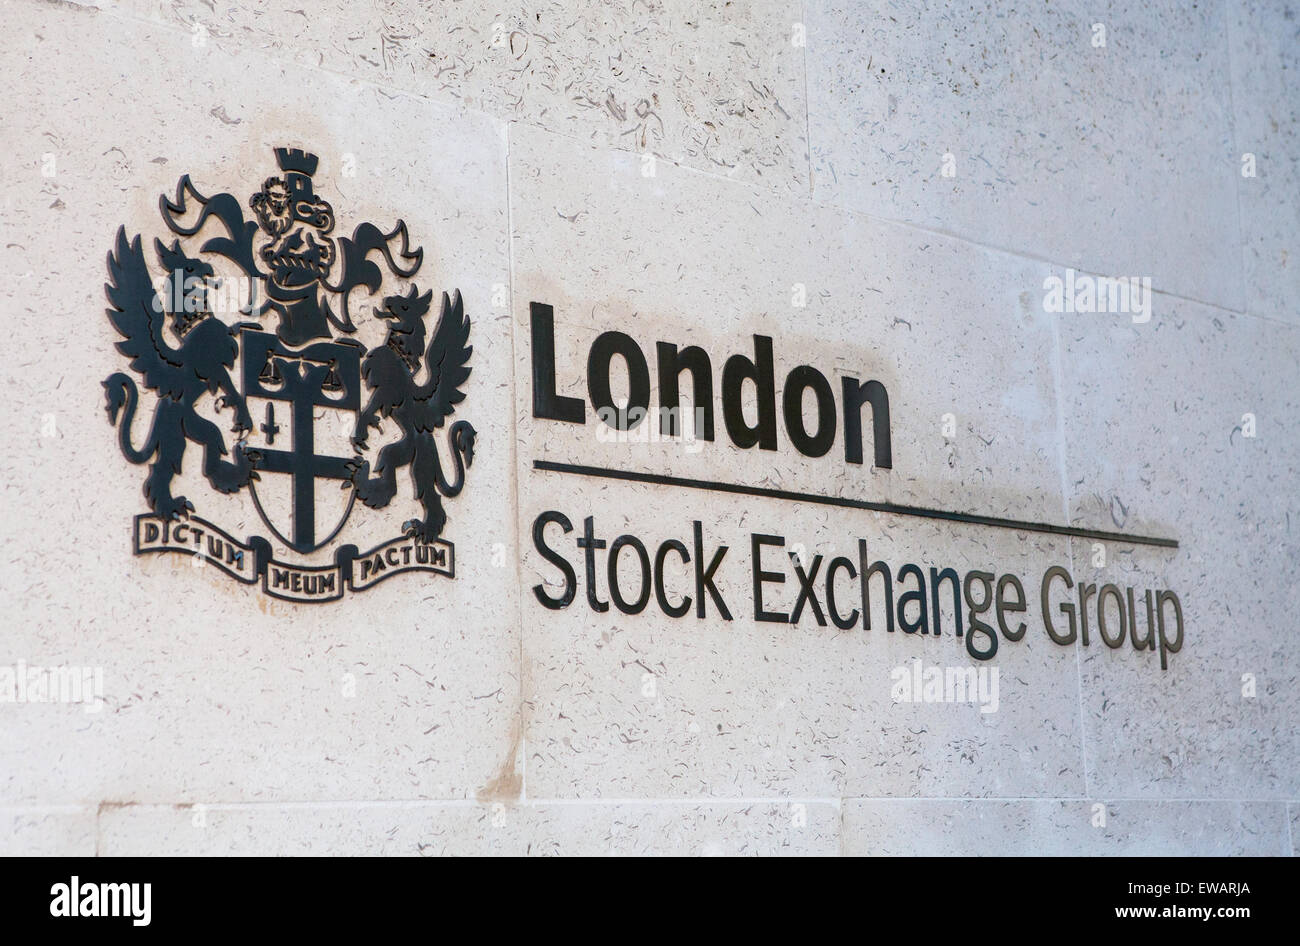 Londres, UK - 7 juin 2015 : Le panneau d'entrée pour le London Stock Exchange building situé dans la ville de Londres, le 7 juin Banque D'Images